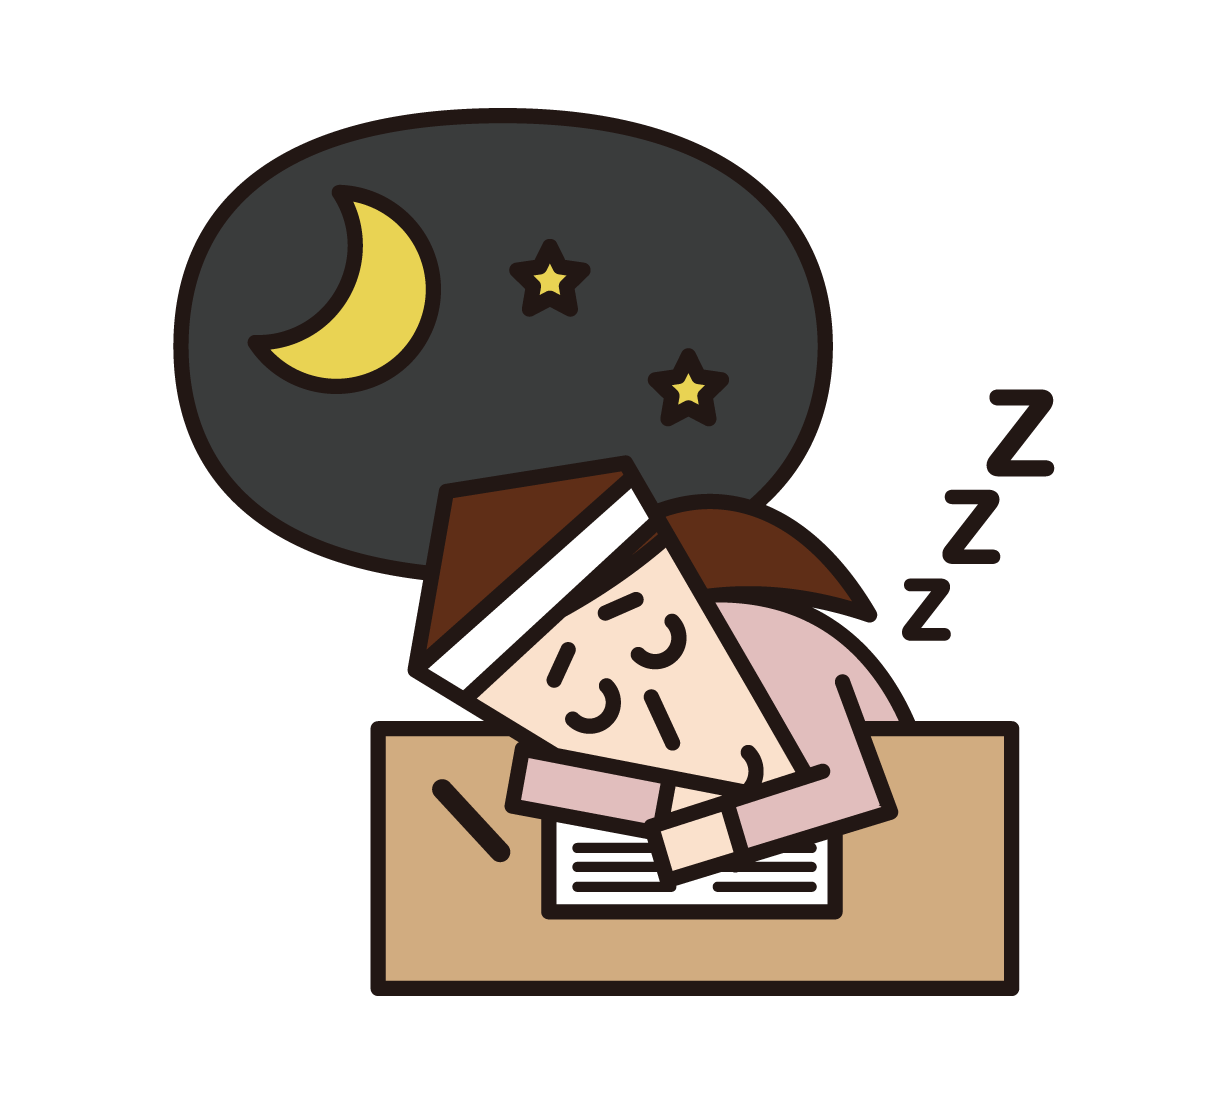 입시를 위해 공부하는 동안 피곤하고 자고있는 사람 (남성)의 삽화